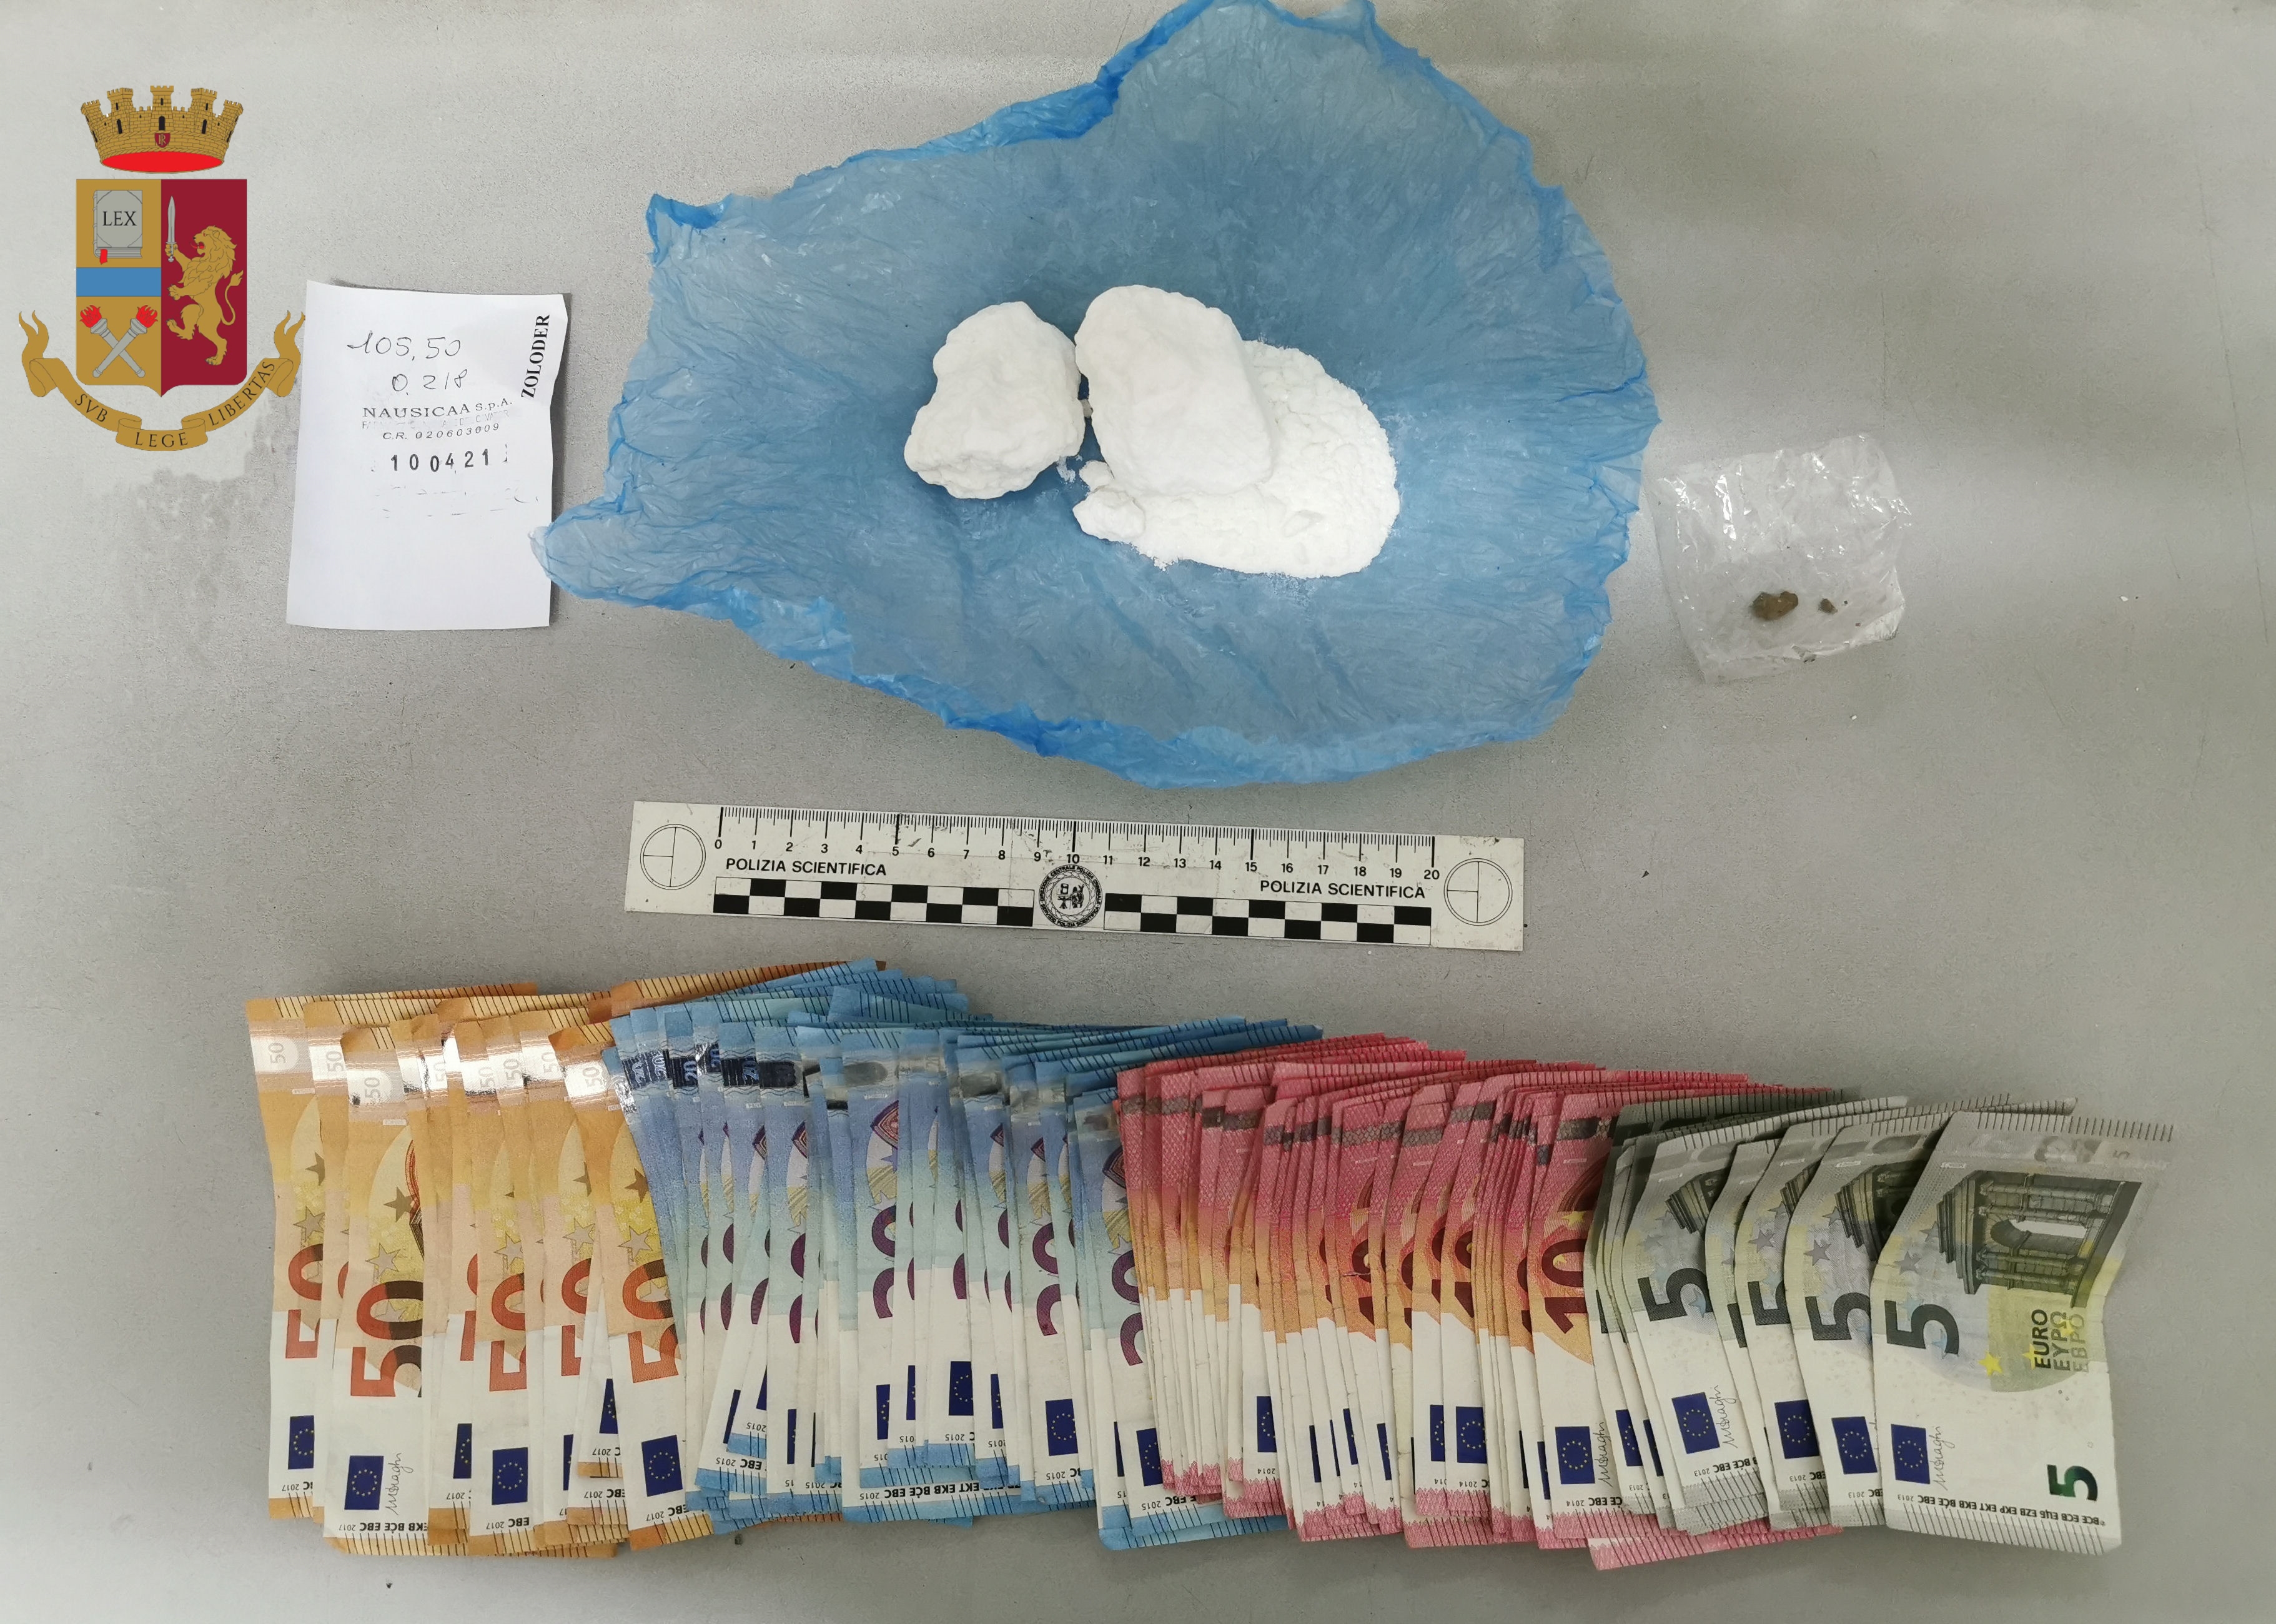 Carrara – Intercettato trafficante di cocaina: arrestato dalla Polizia di Stato con oltre 1 etto di cocaina, hashish e 1600 euro in contanti